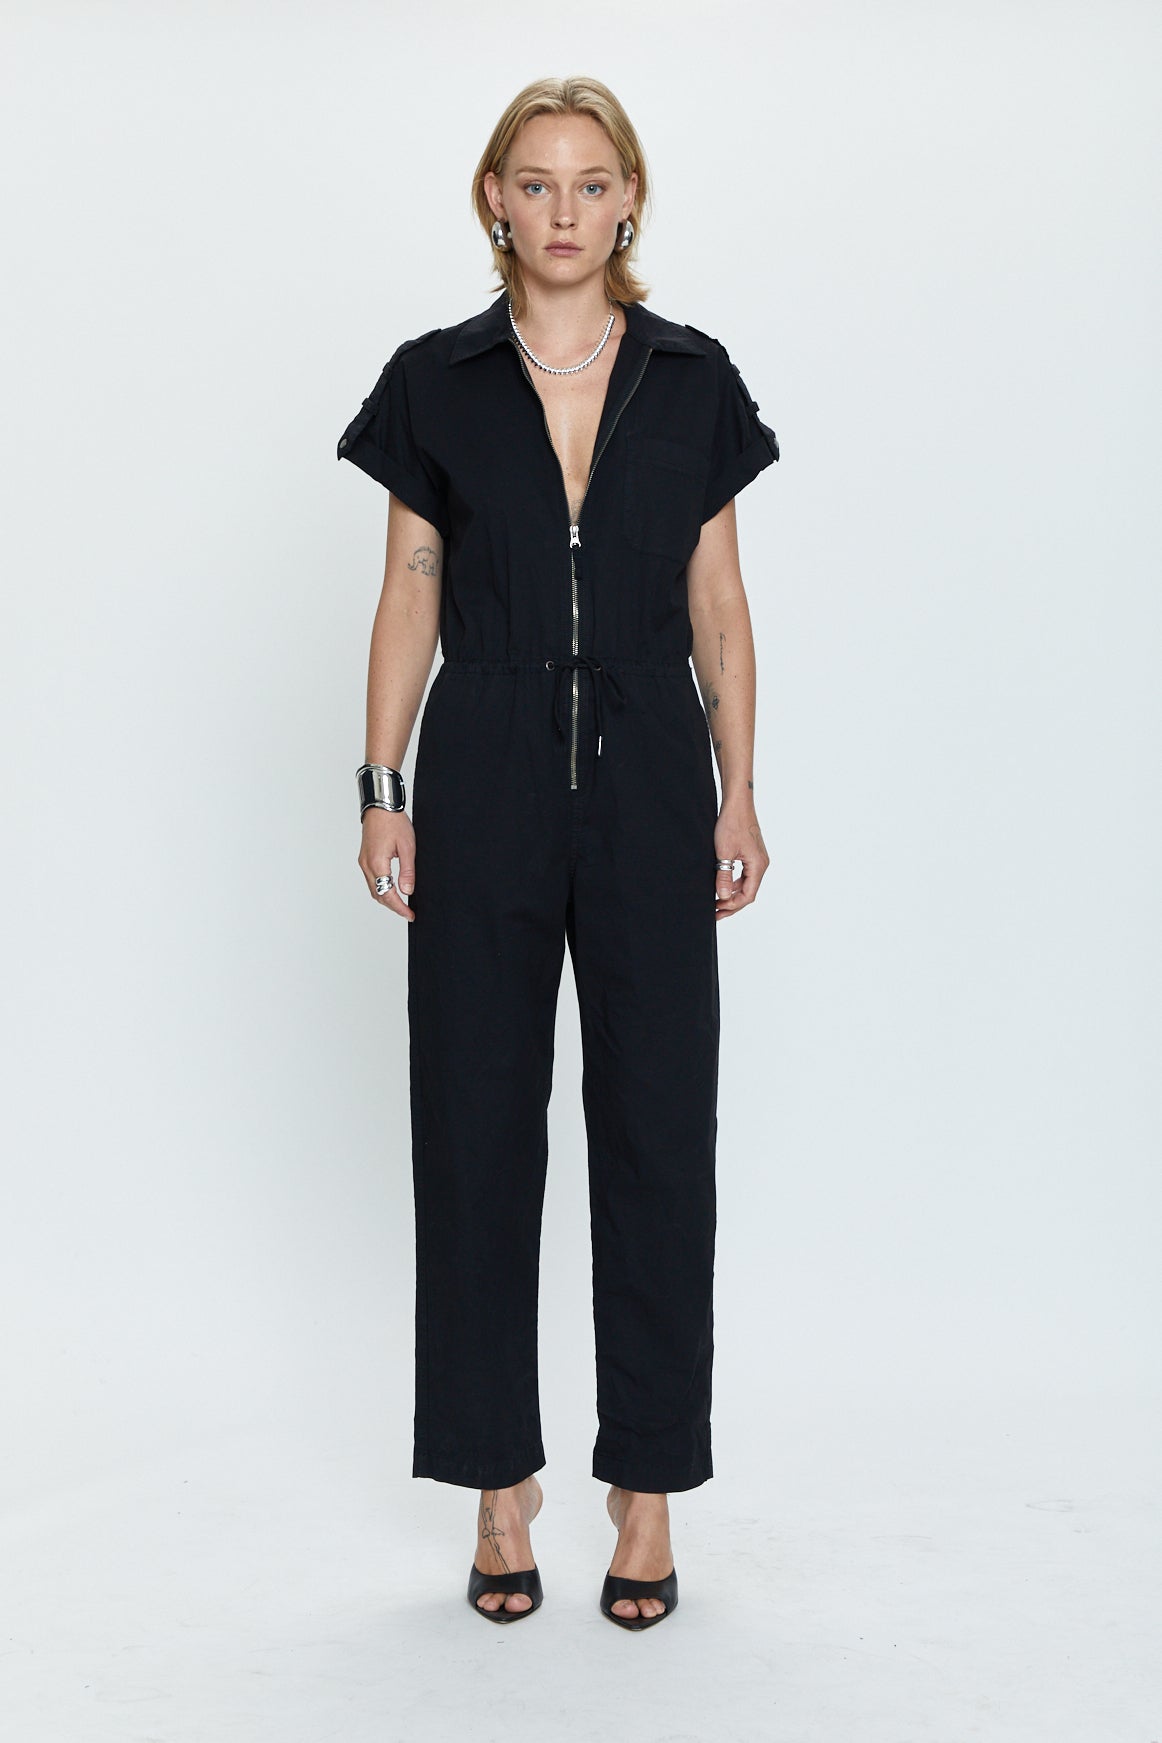 Jordan Short Sleeve Zip Front Jumpsuit - Fade to Black
            
              Sale